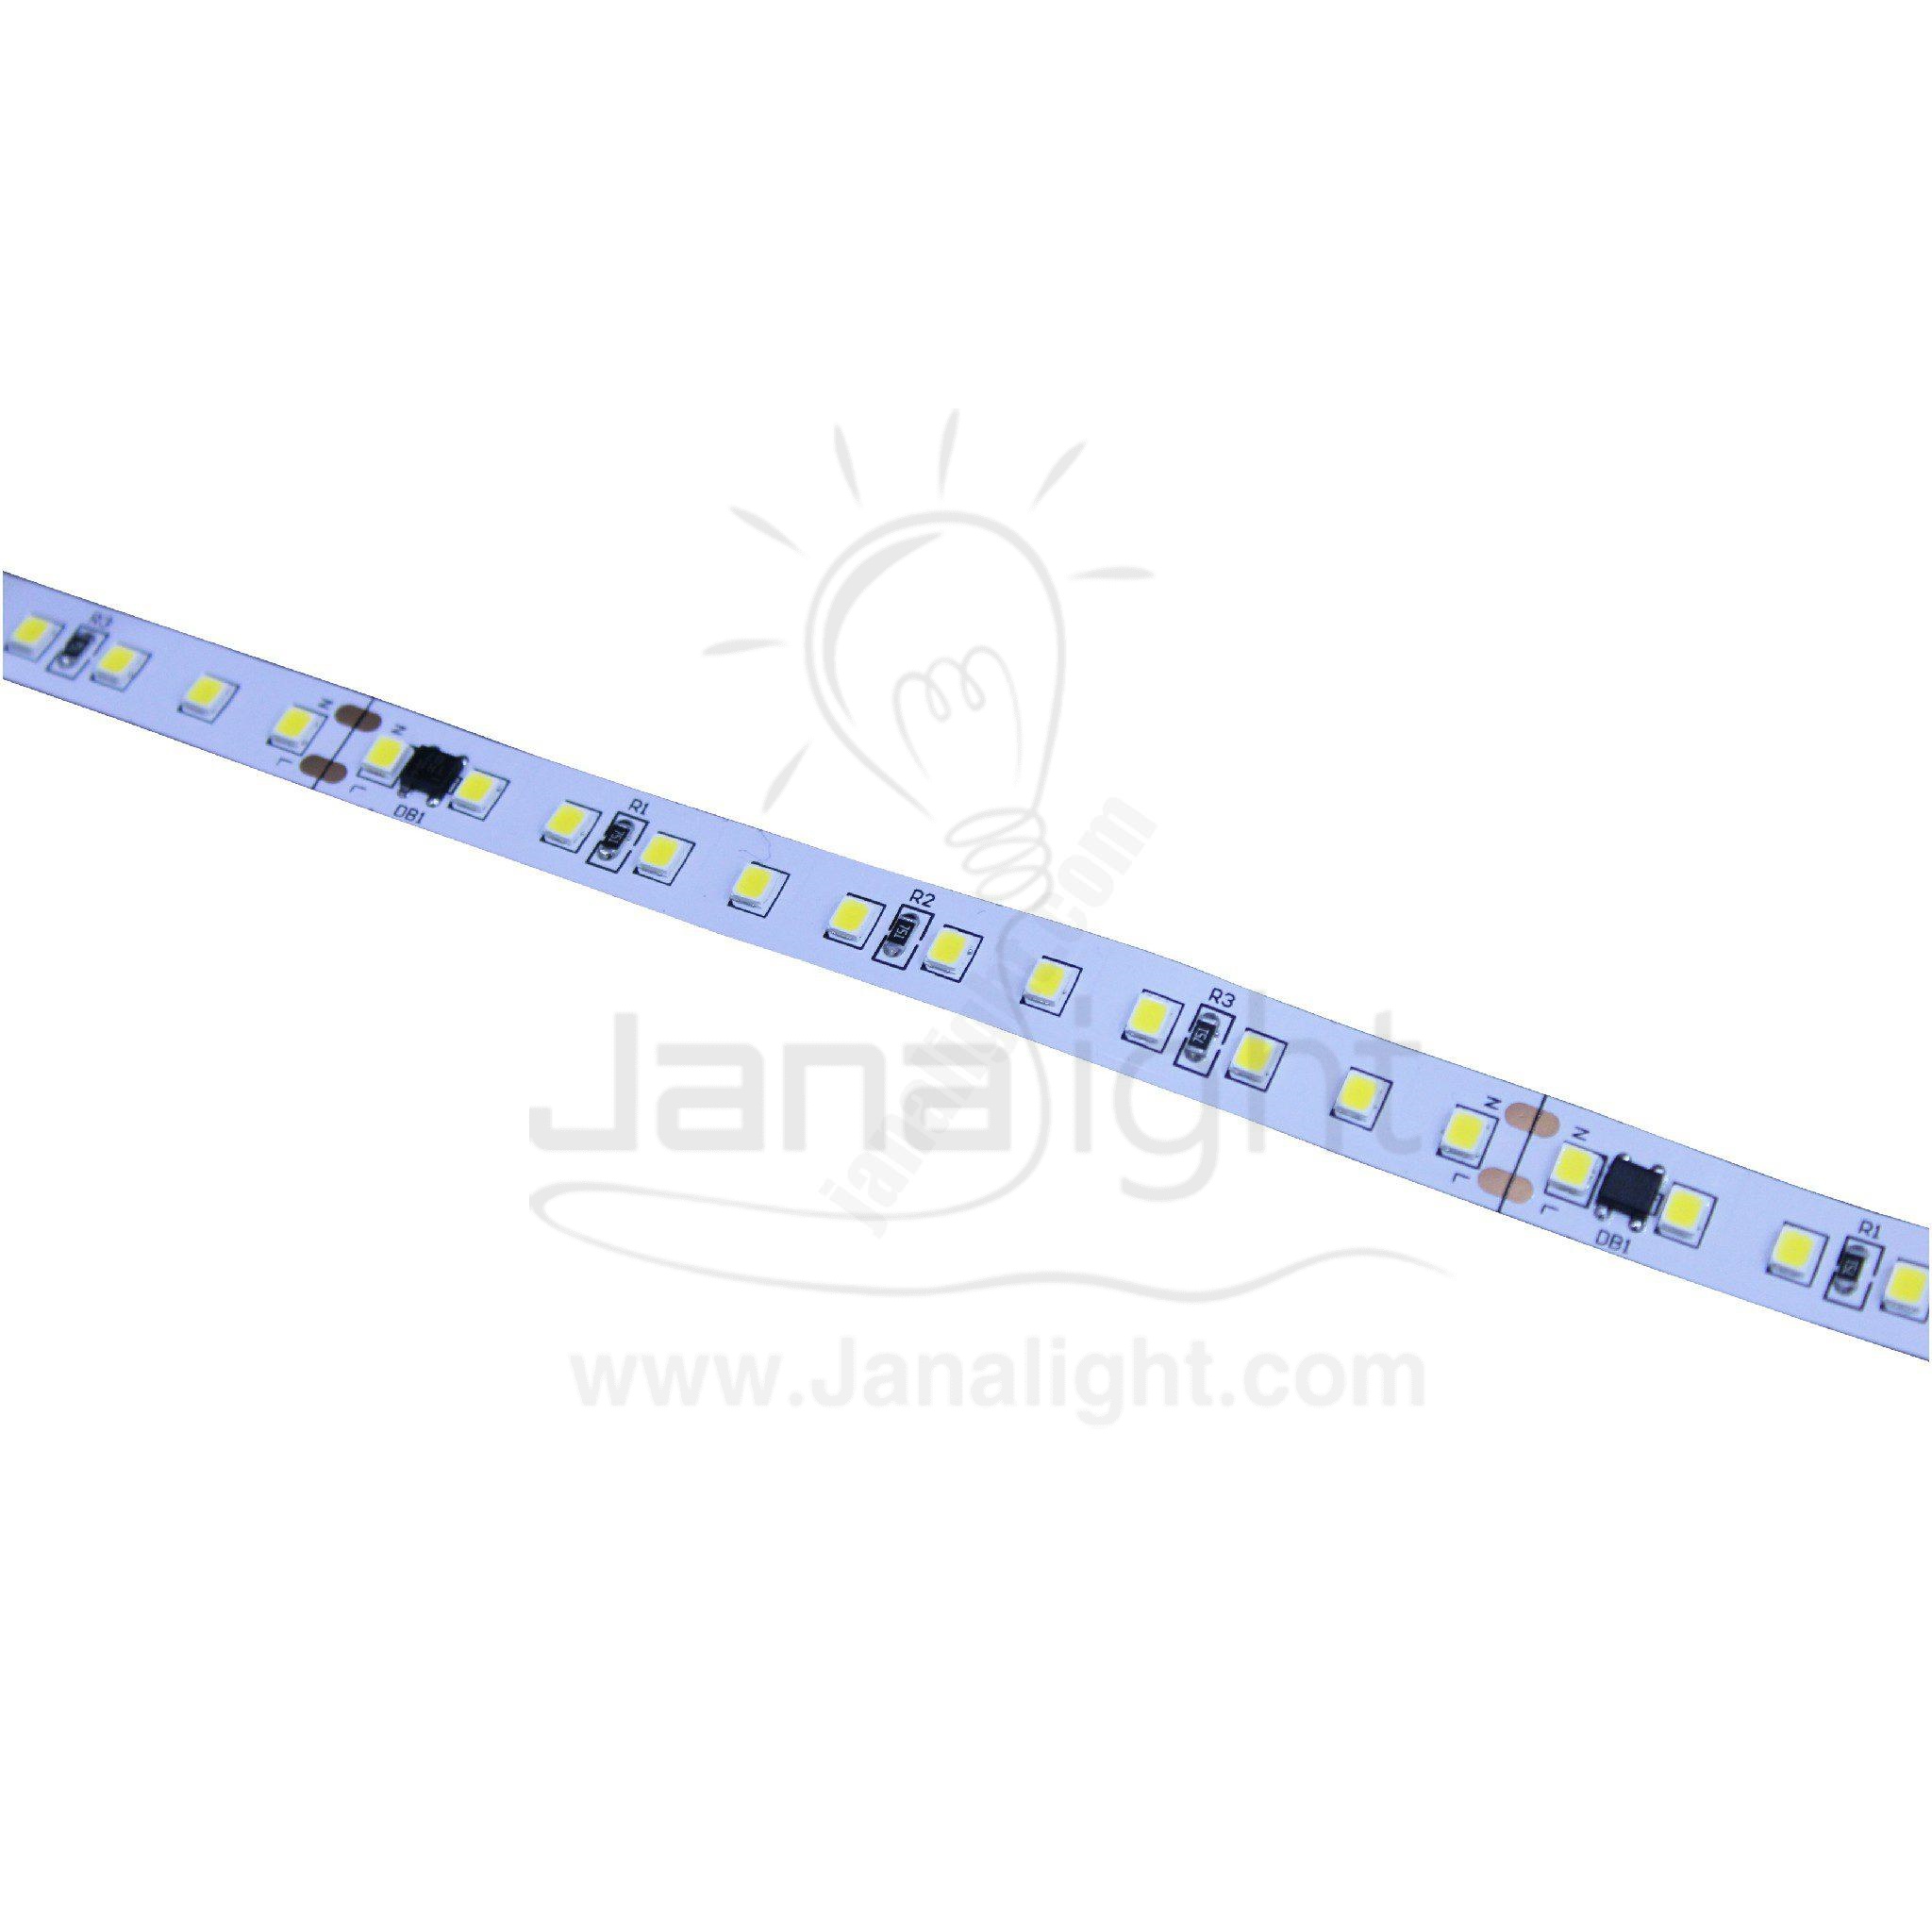 شريط لد بروفايل 220 فولت تيار 10 متر كوول جنى لايت led tape profile 220v 10m cool jana light